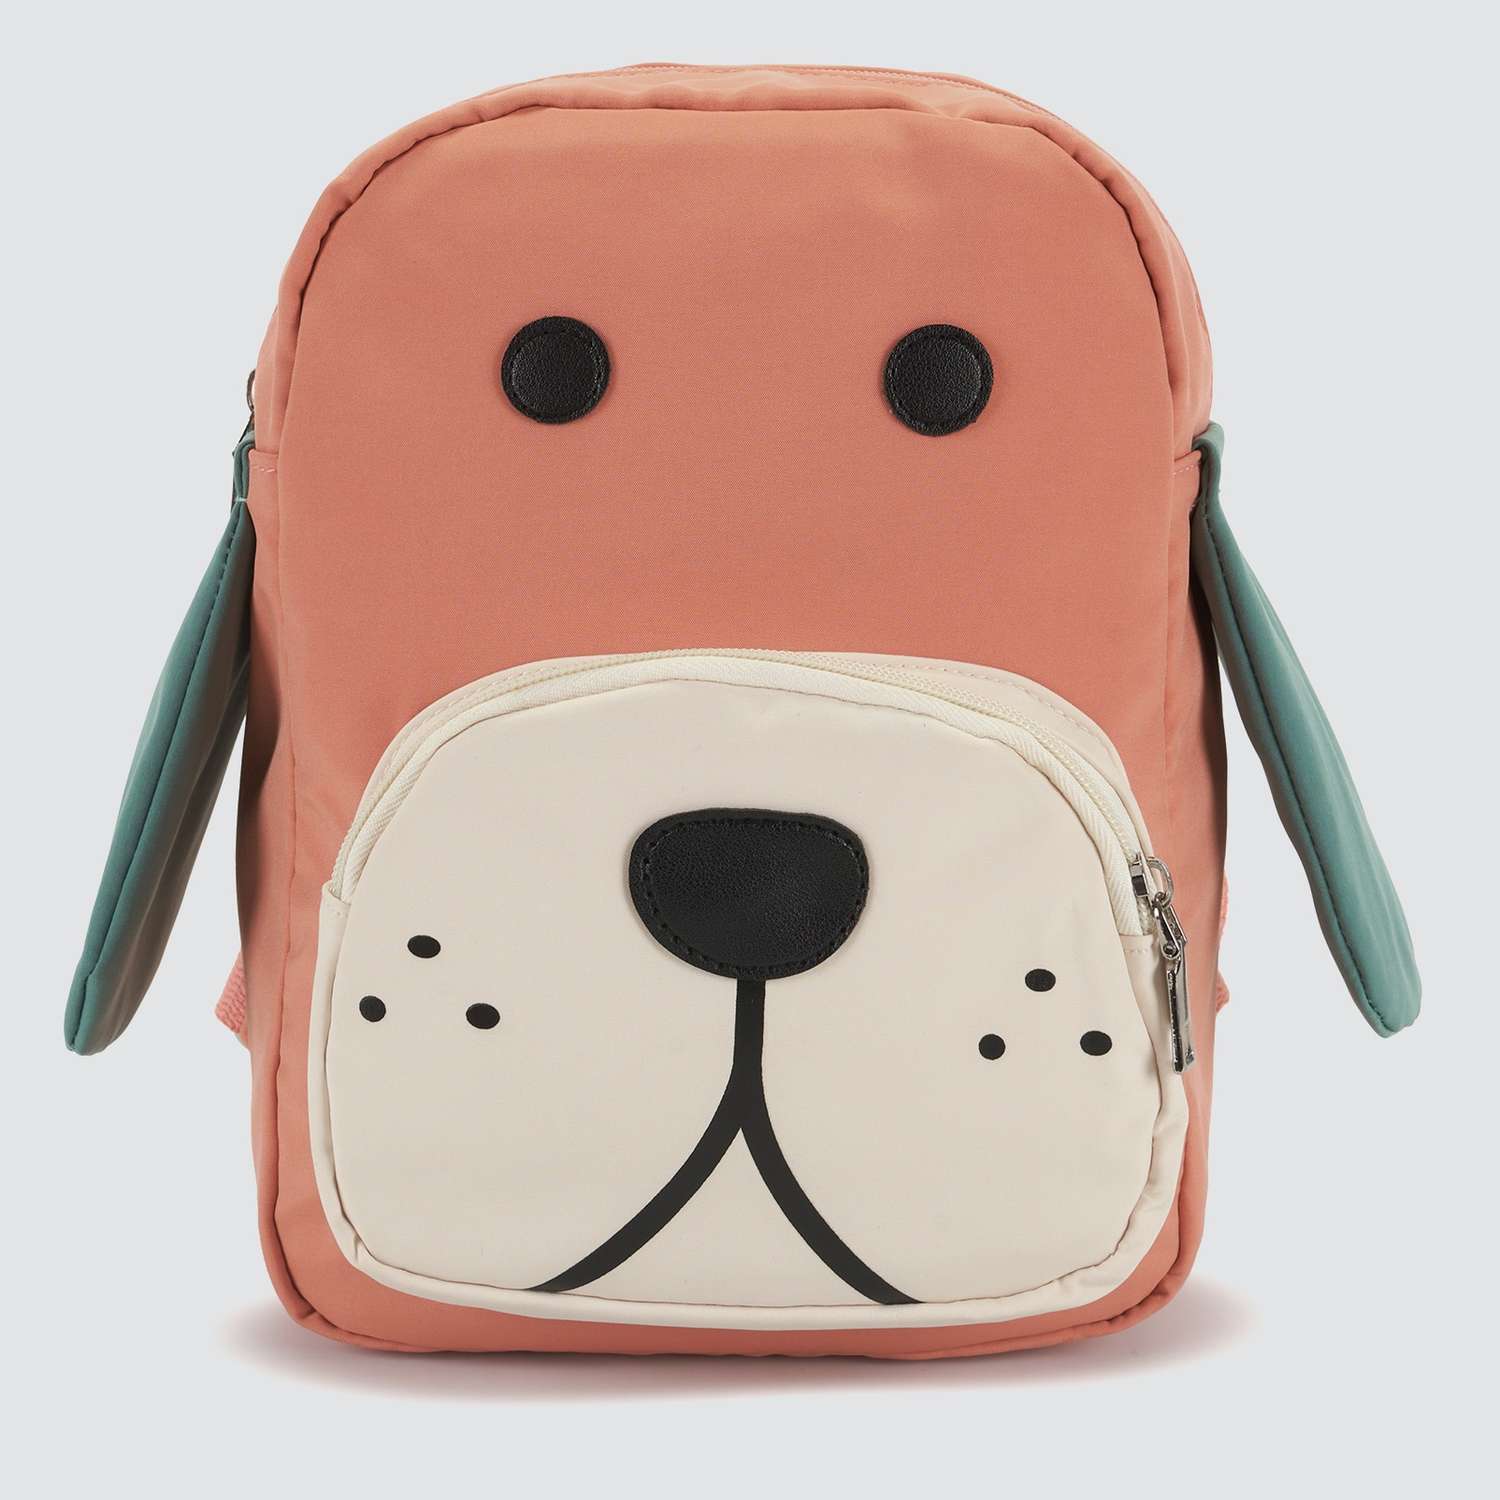 Детский рюкзак Journey 10711 оранжевый собака - фото 2